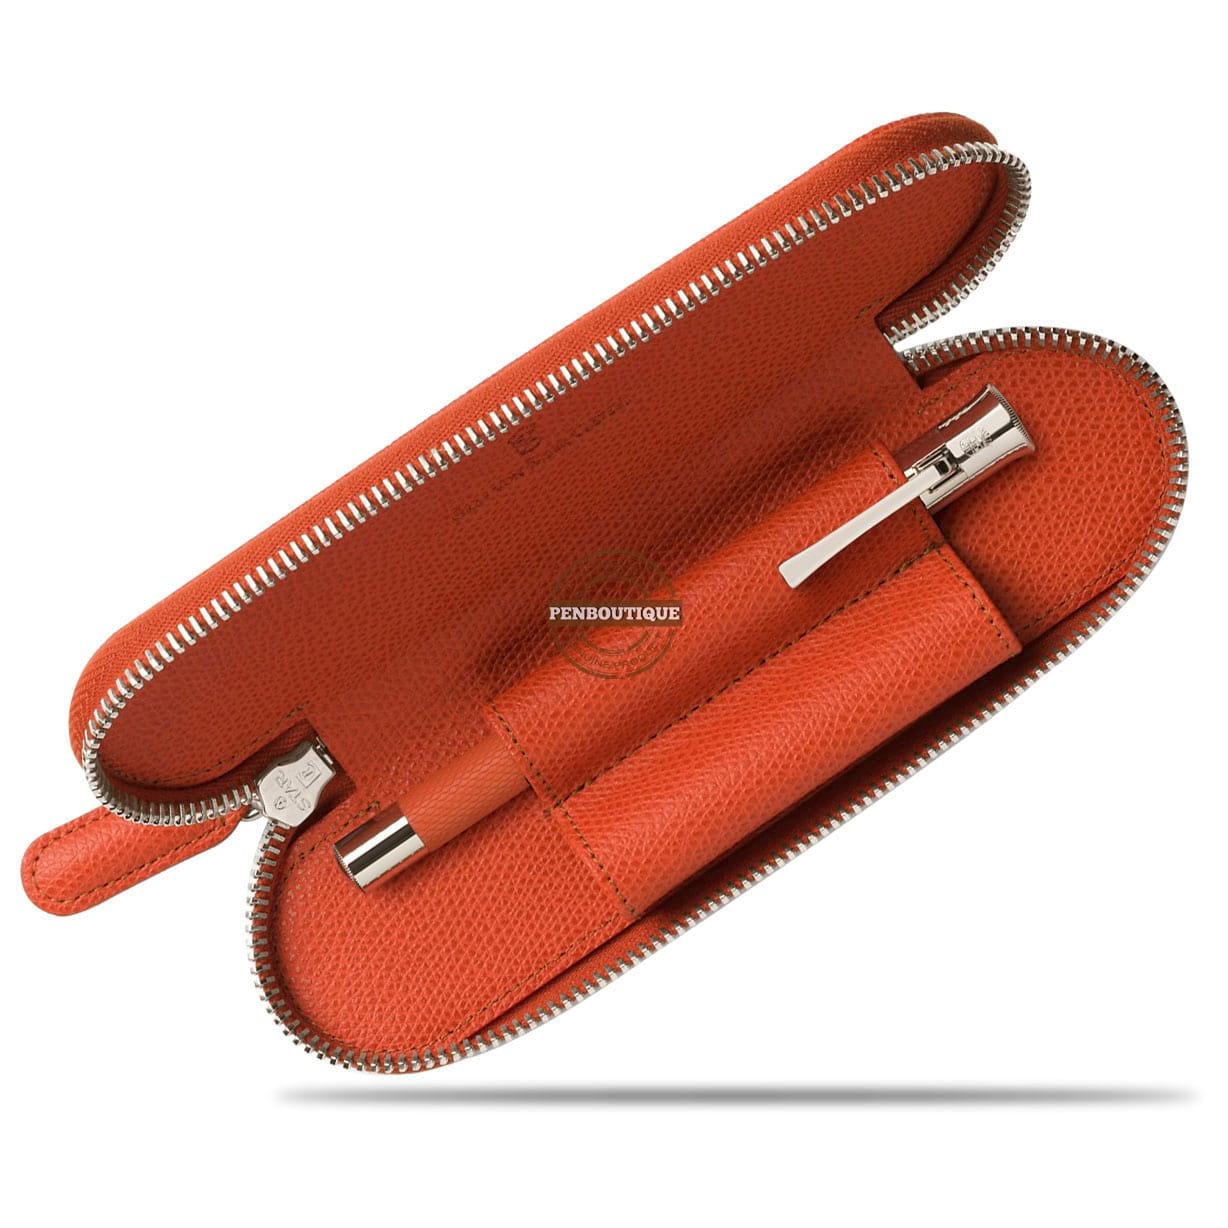 Graf Von Faber-Castell Burned Orange Double Pen Case-Pen Boutique Ltd